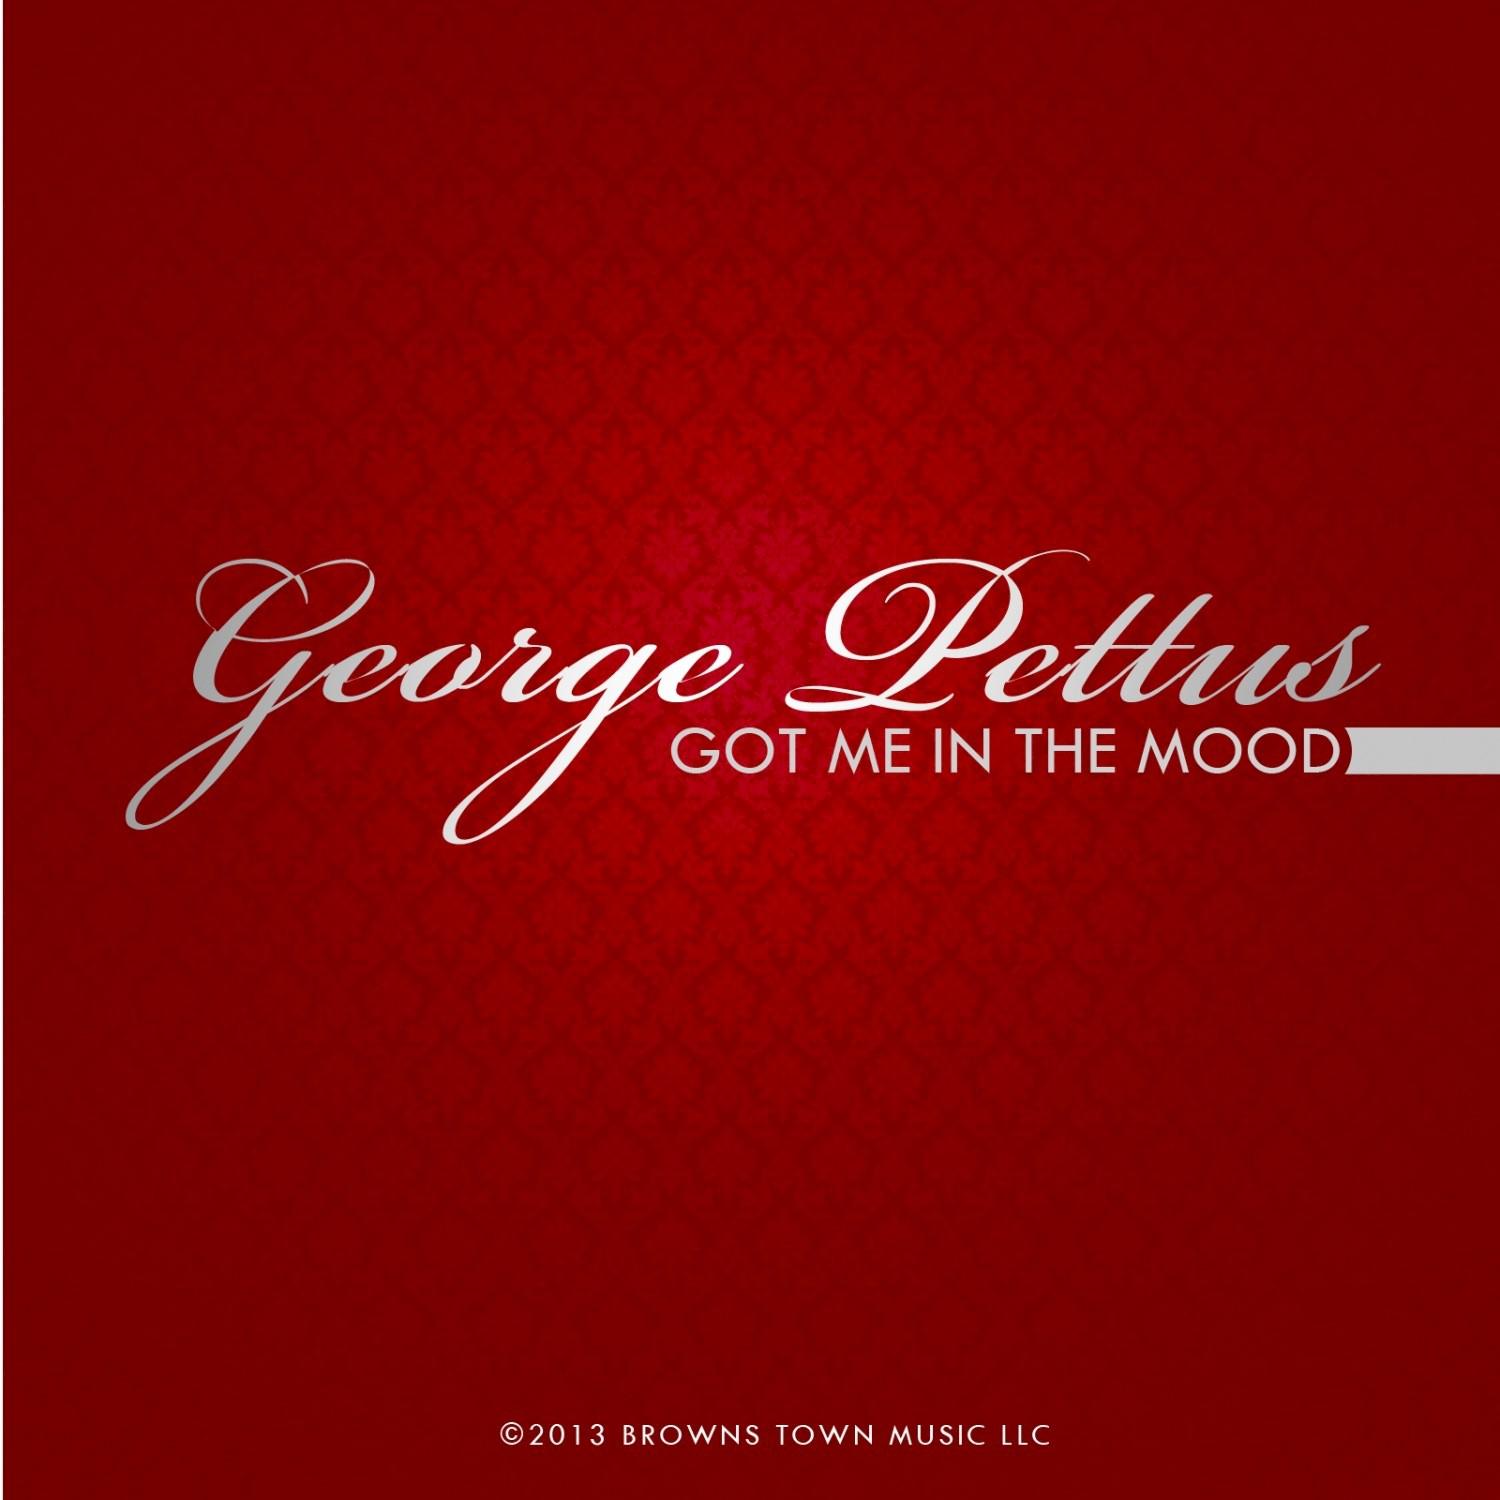 George Pettus - Intro